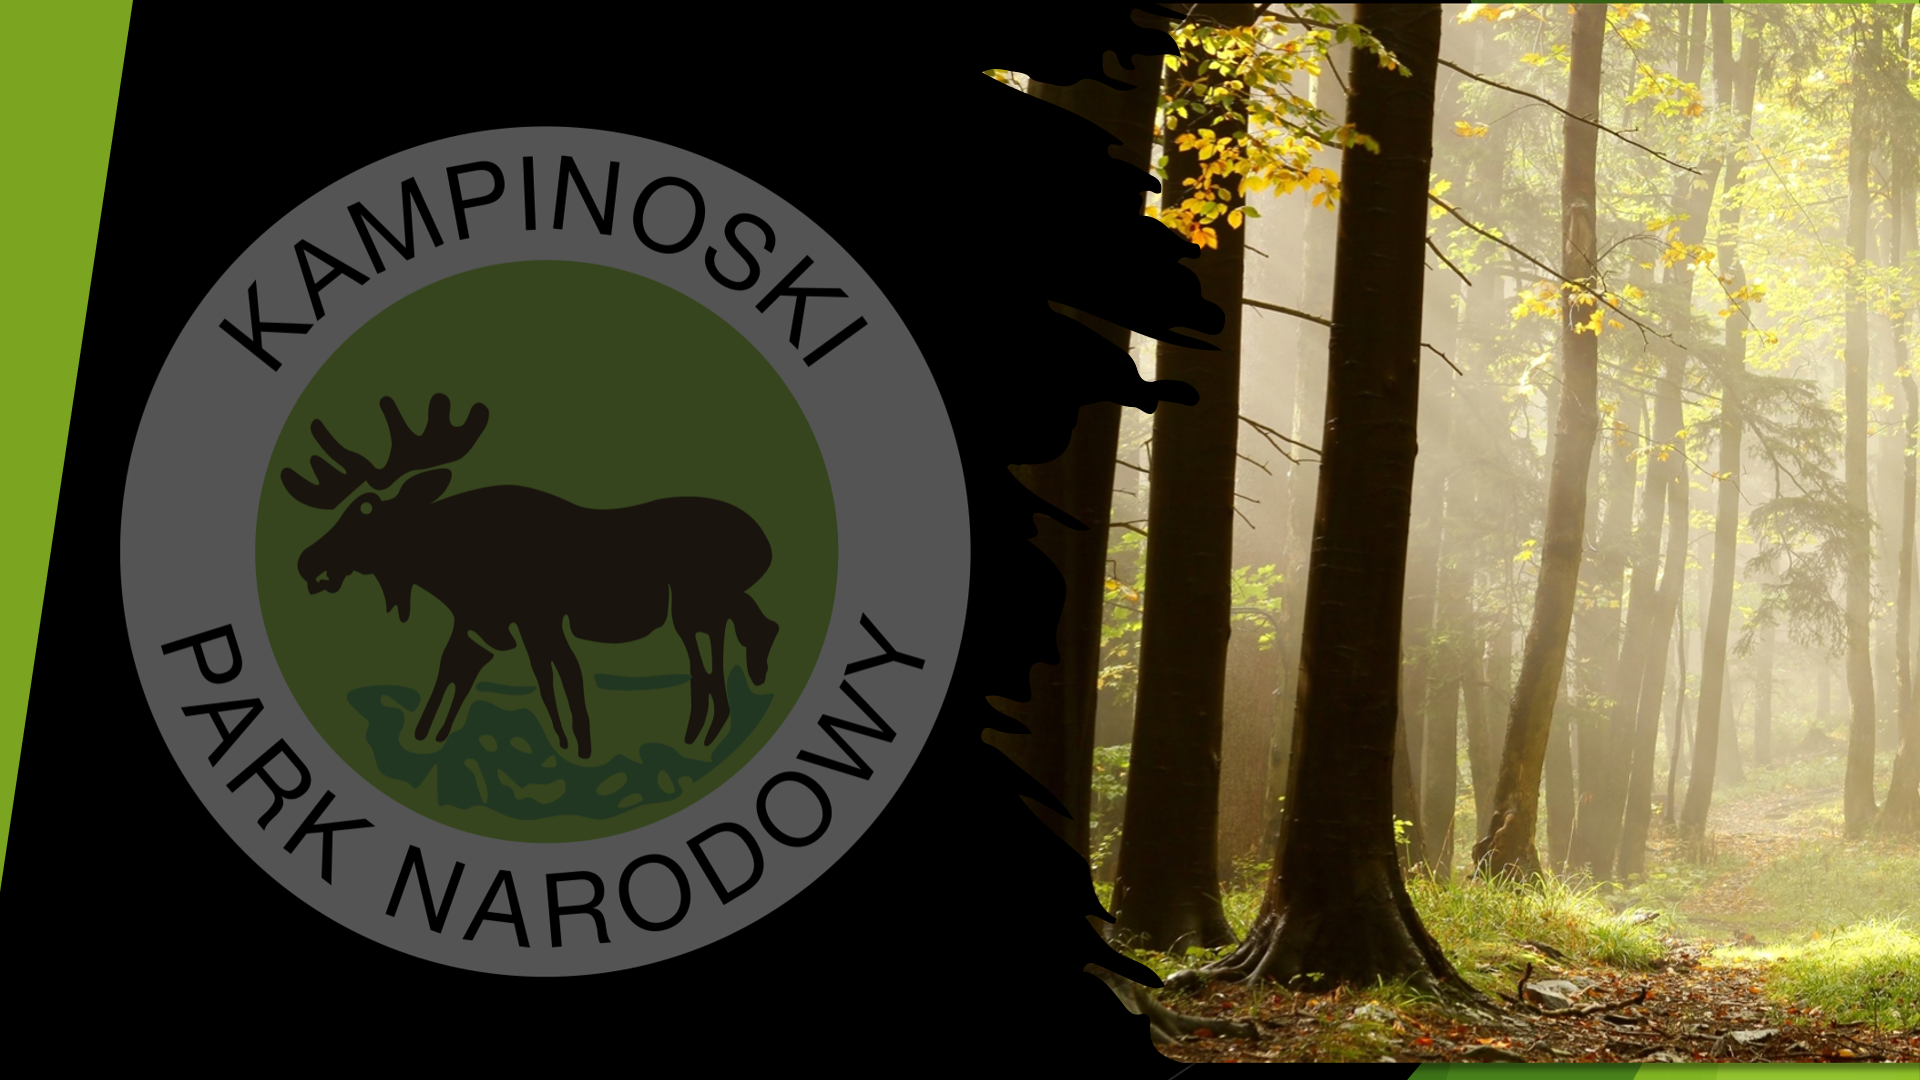 Na zdjęciu widać logo parku przedstawiające łosia na tle drzew oraz napis Kampinoski Park Narodowy.